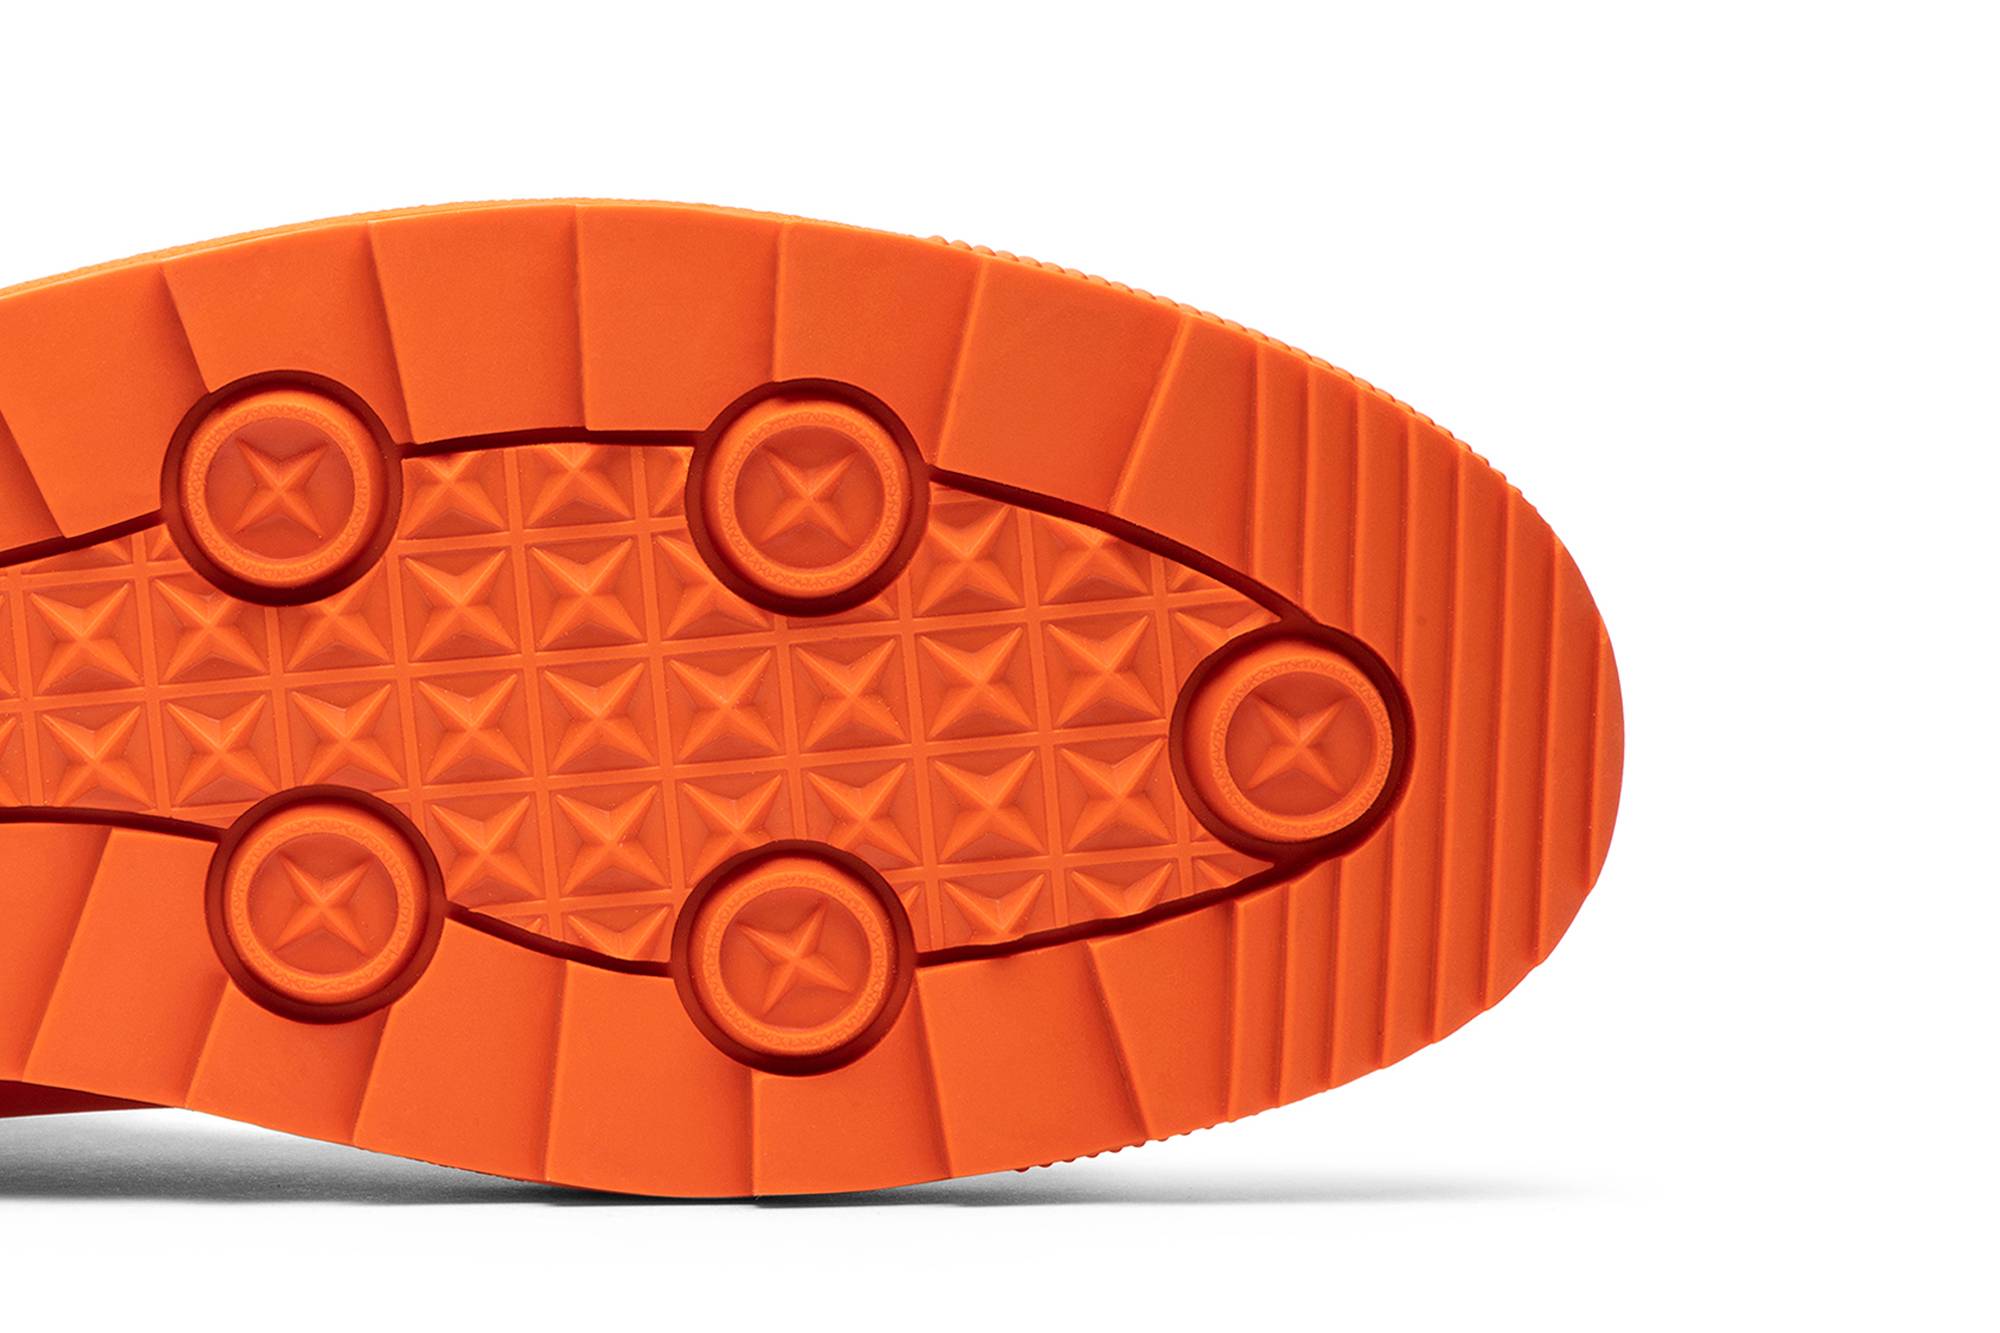 Pre-owned Puma Atelier New Regime X Basket Boot 'scarlet Ibis' In Orange